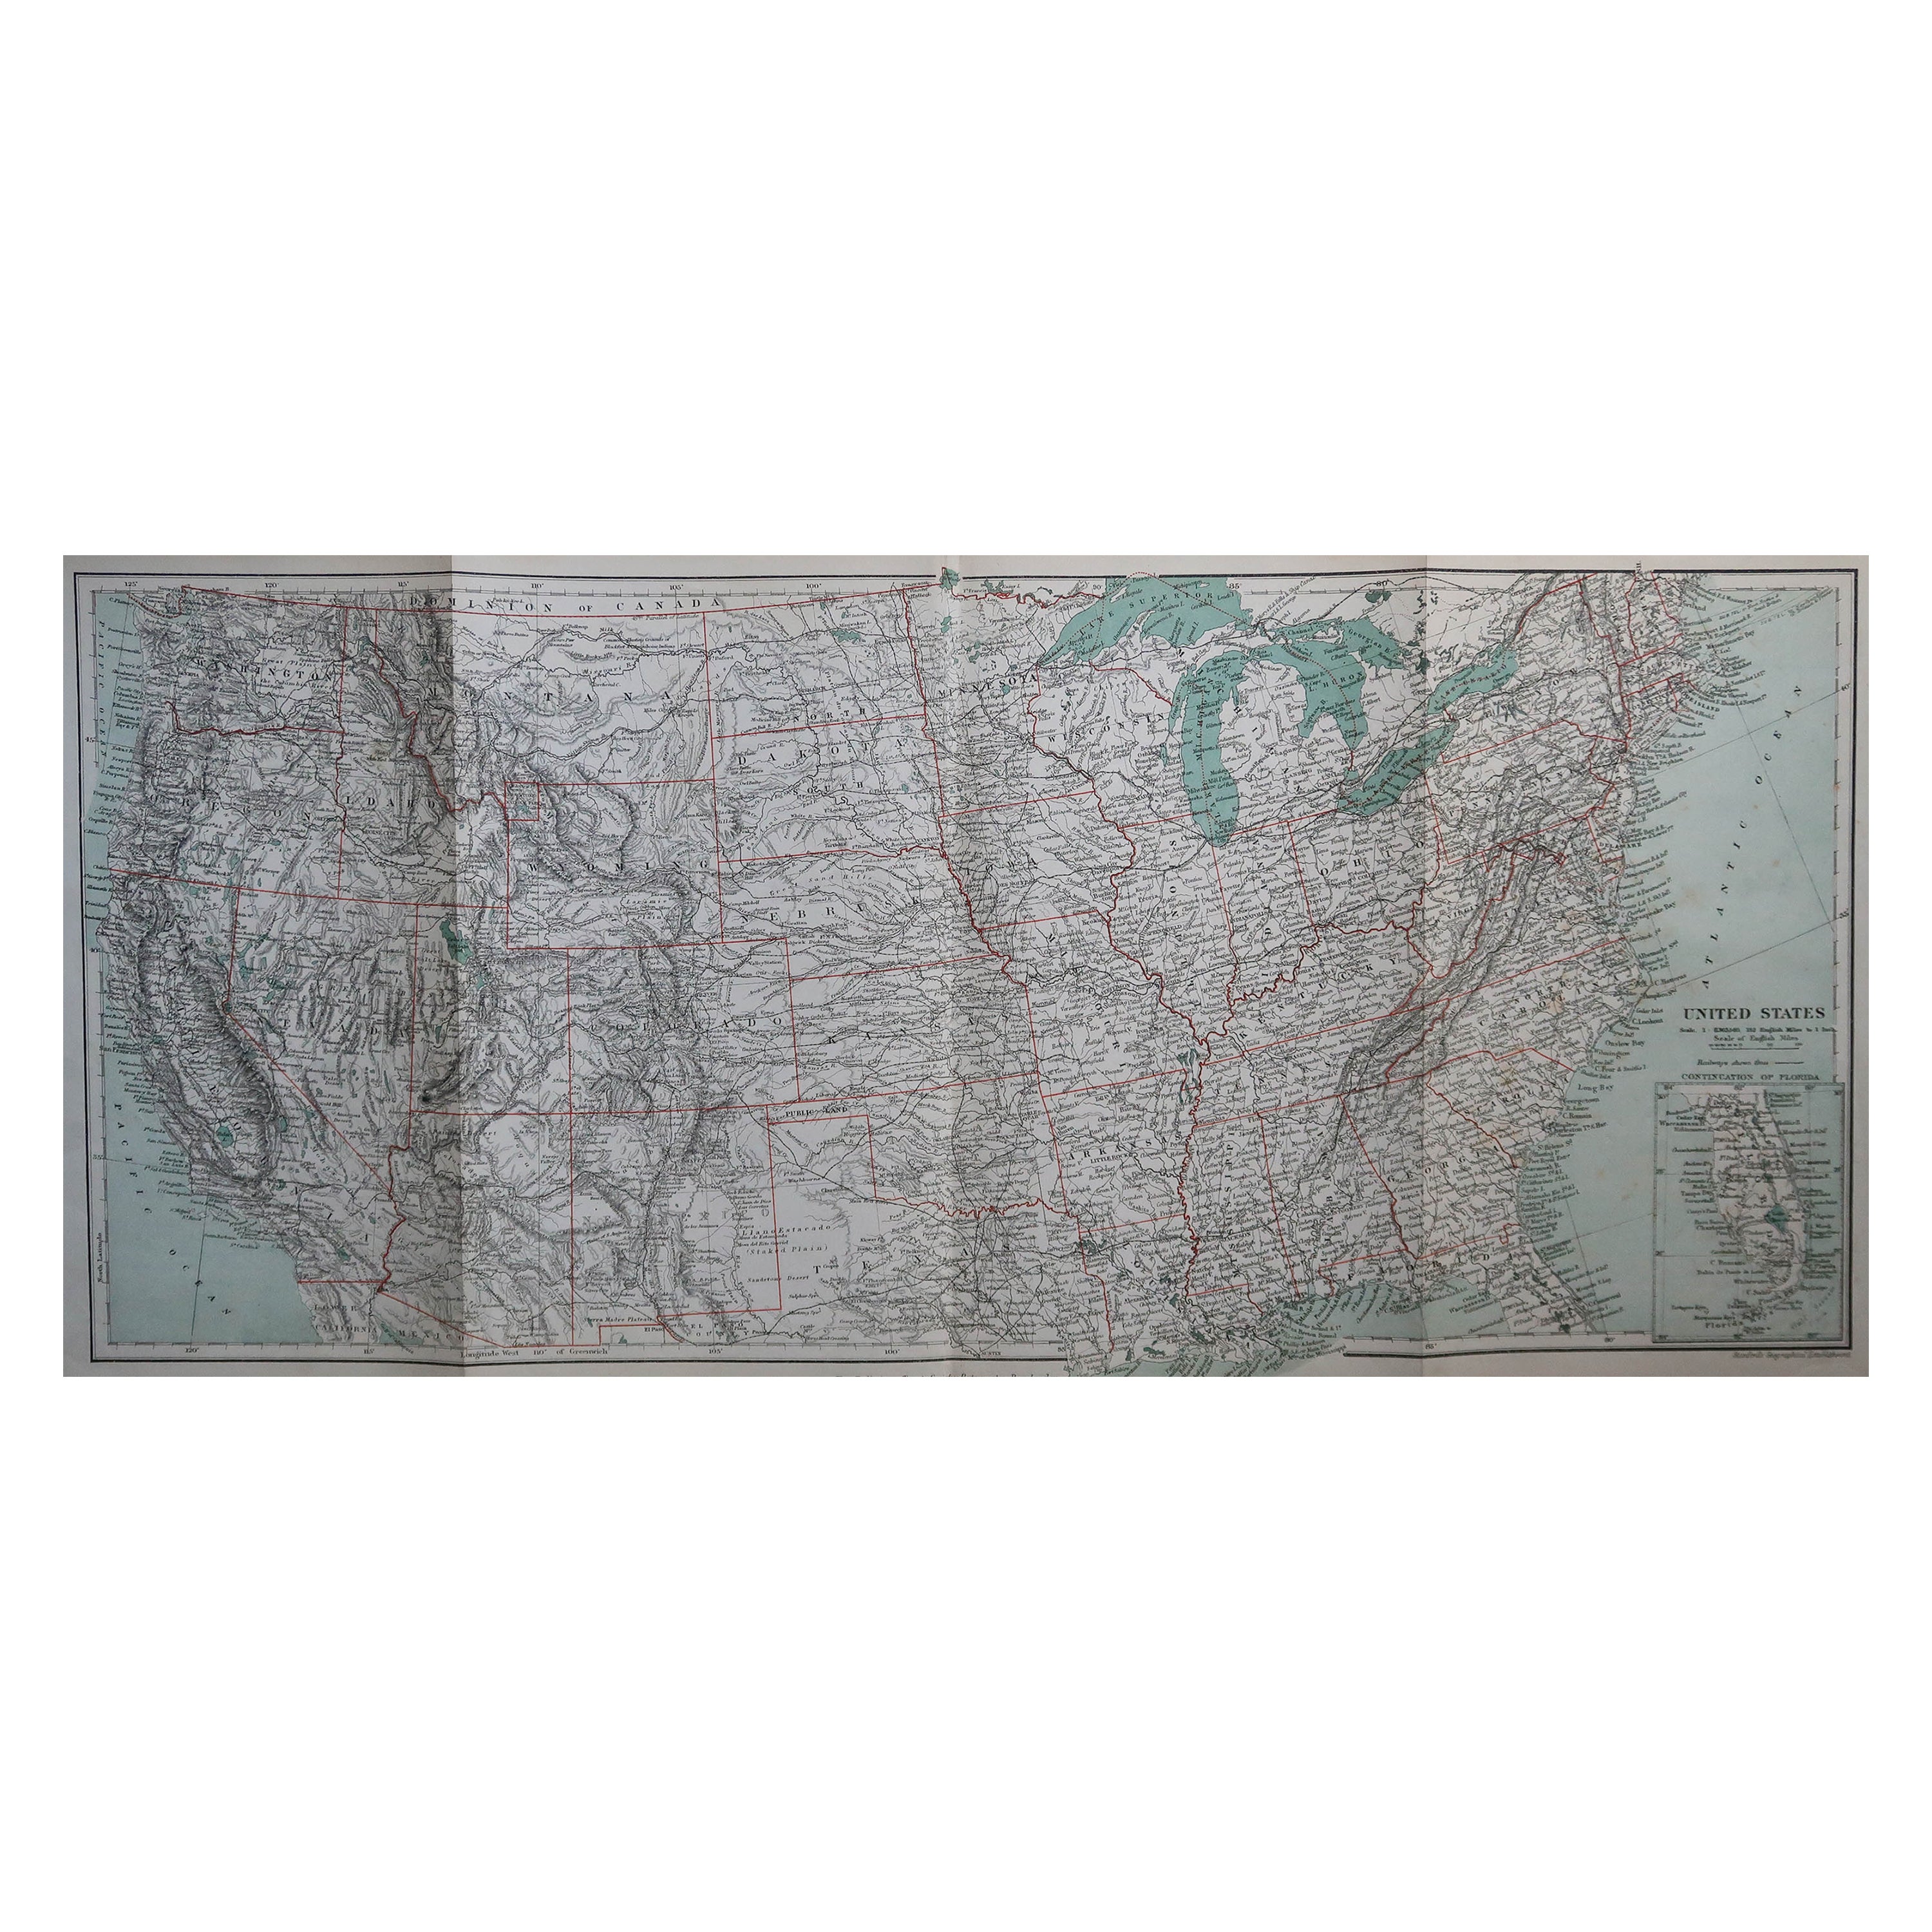 Mapa original antiguo de los Estados Unidos de América, hacia 1890 en venta